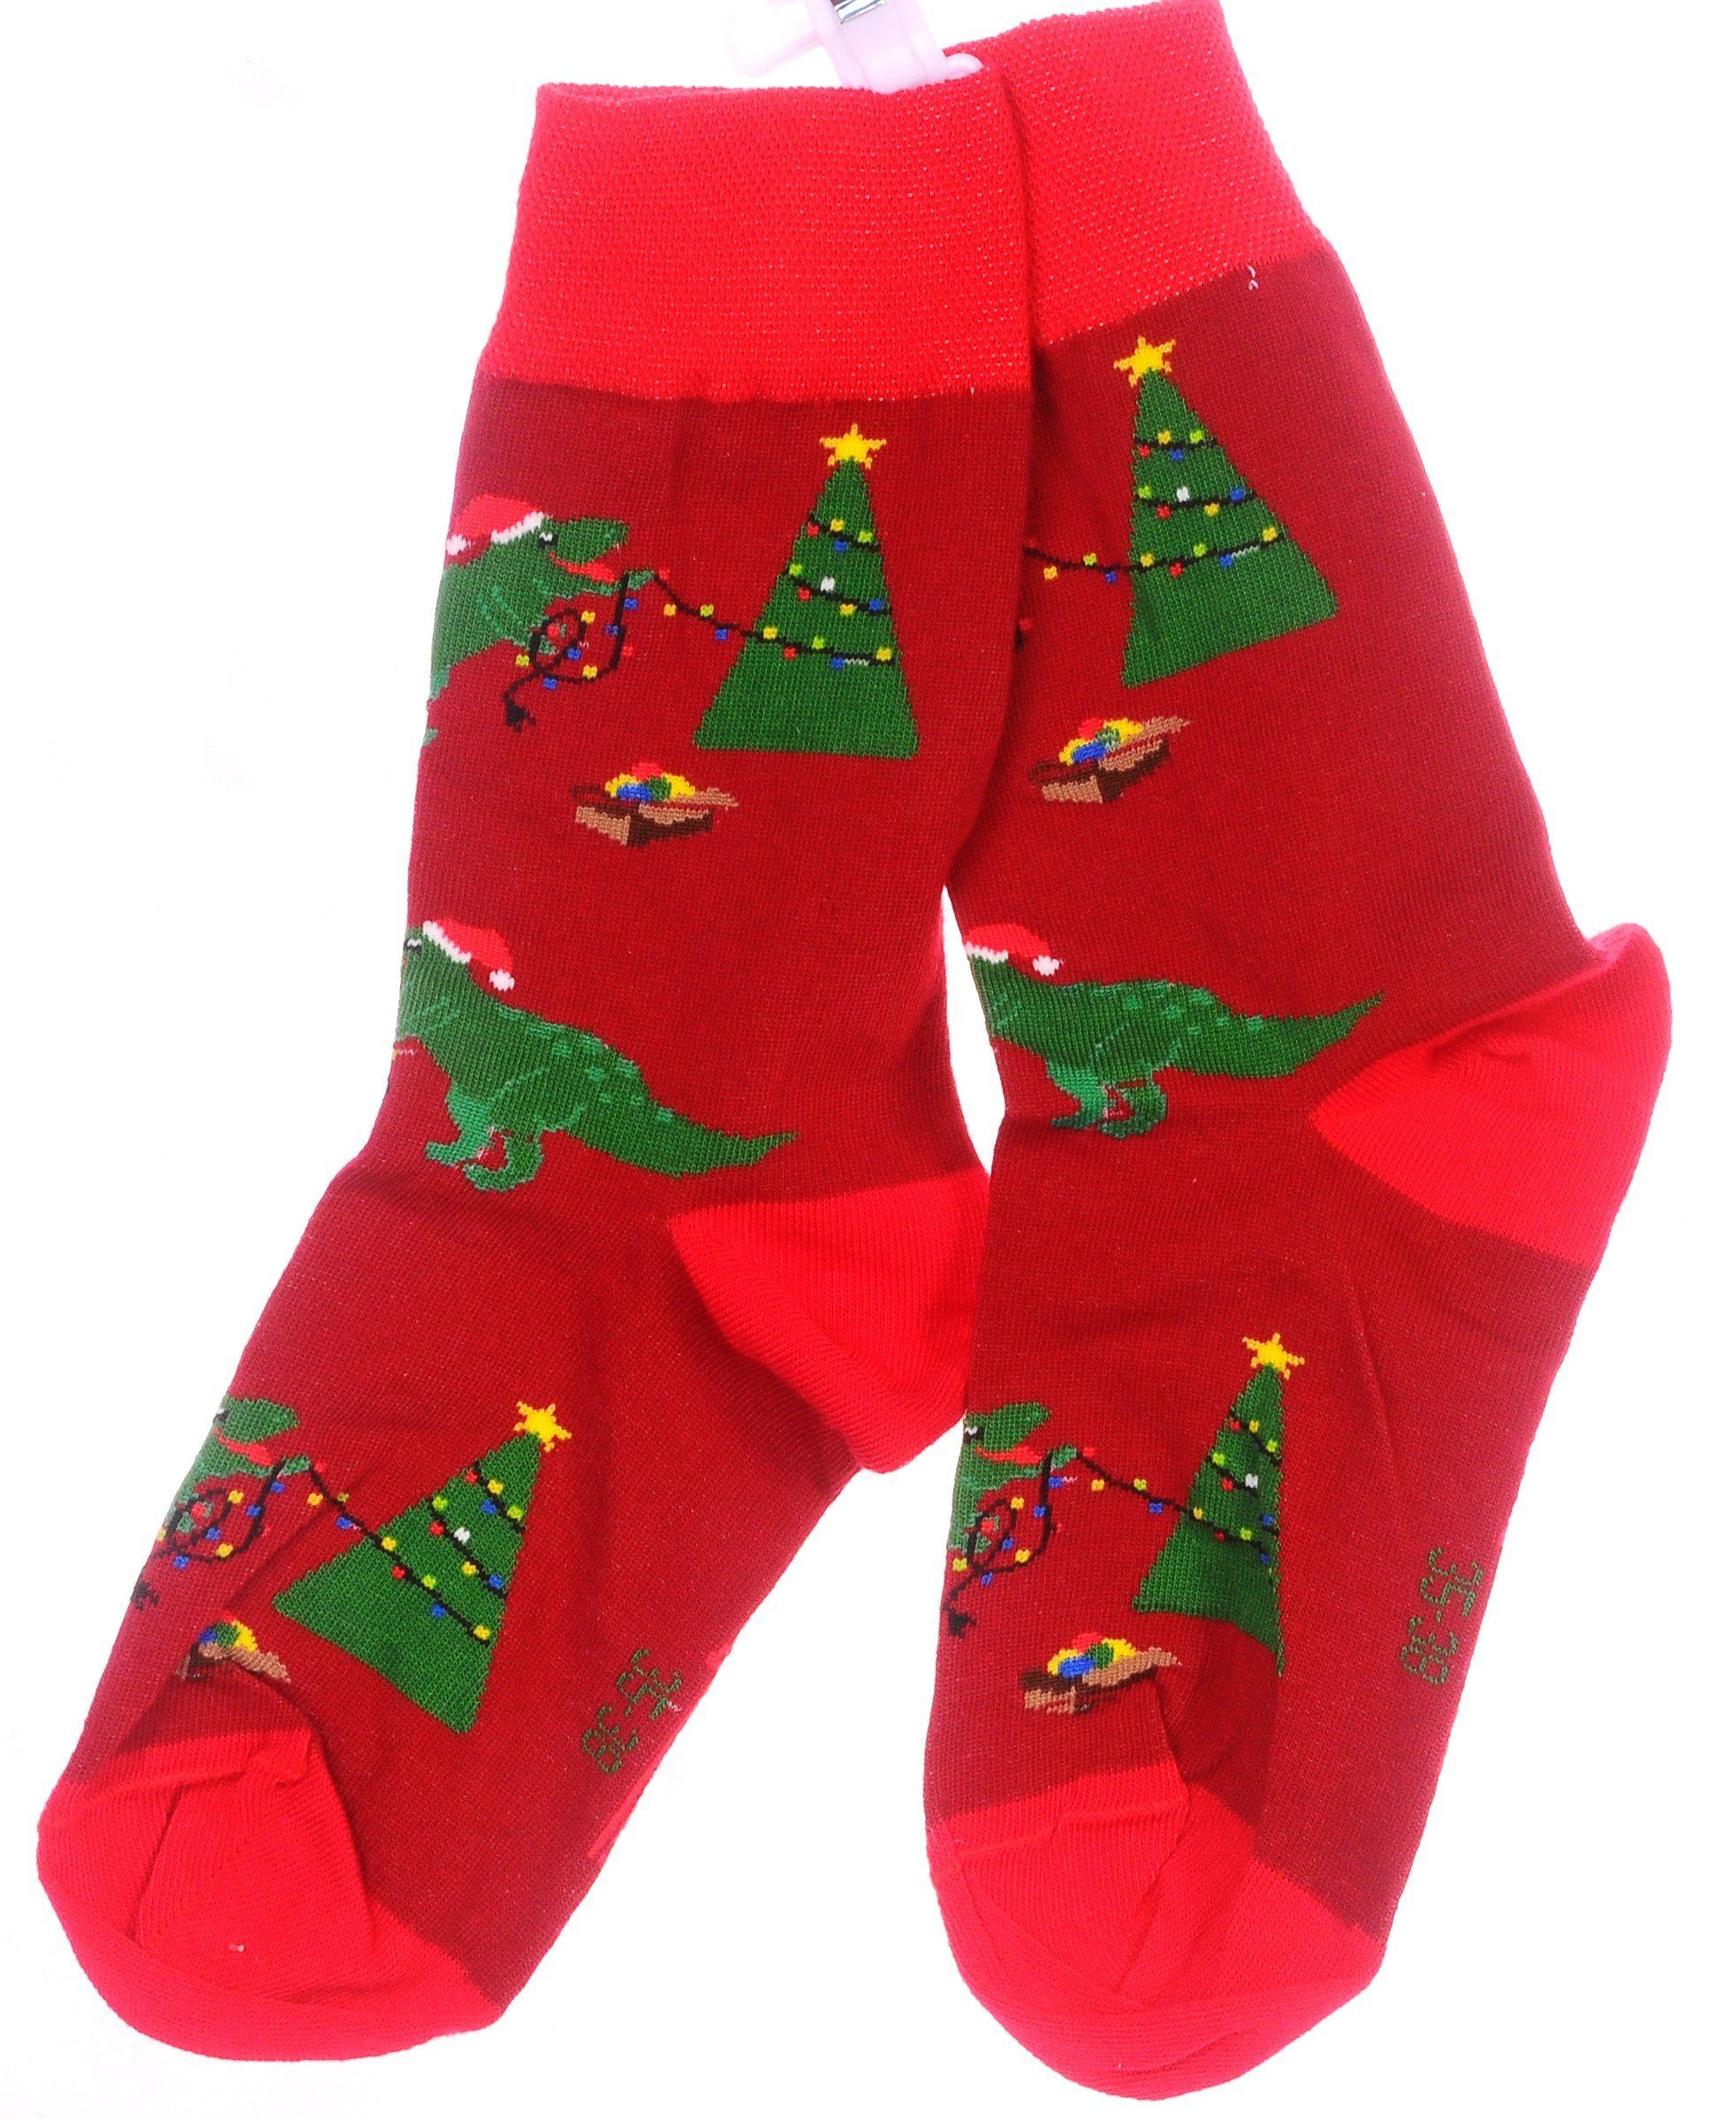 Martinex Socken 1 42 Muster Tannenbaum mit Strümpfe 38 39 Drachen Paar 31 27 43 und Socken Weihnachtssocken 35 46